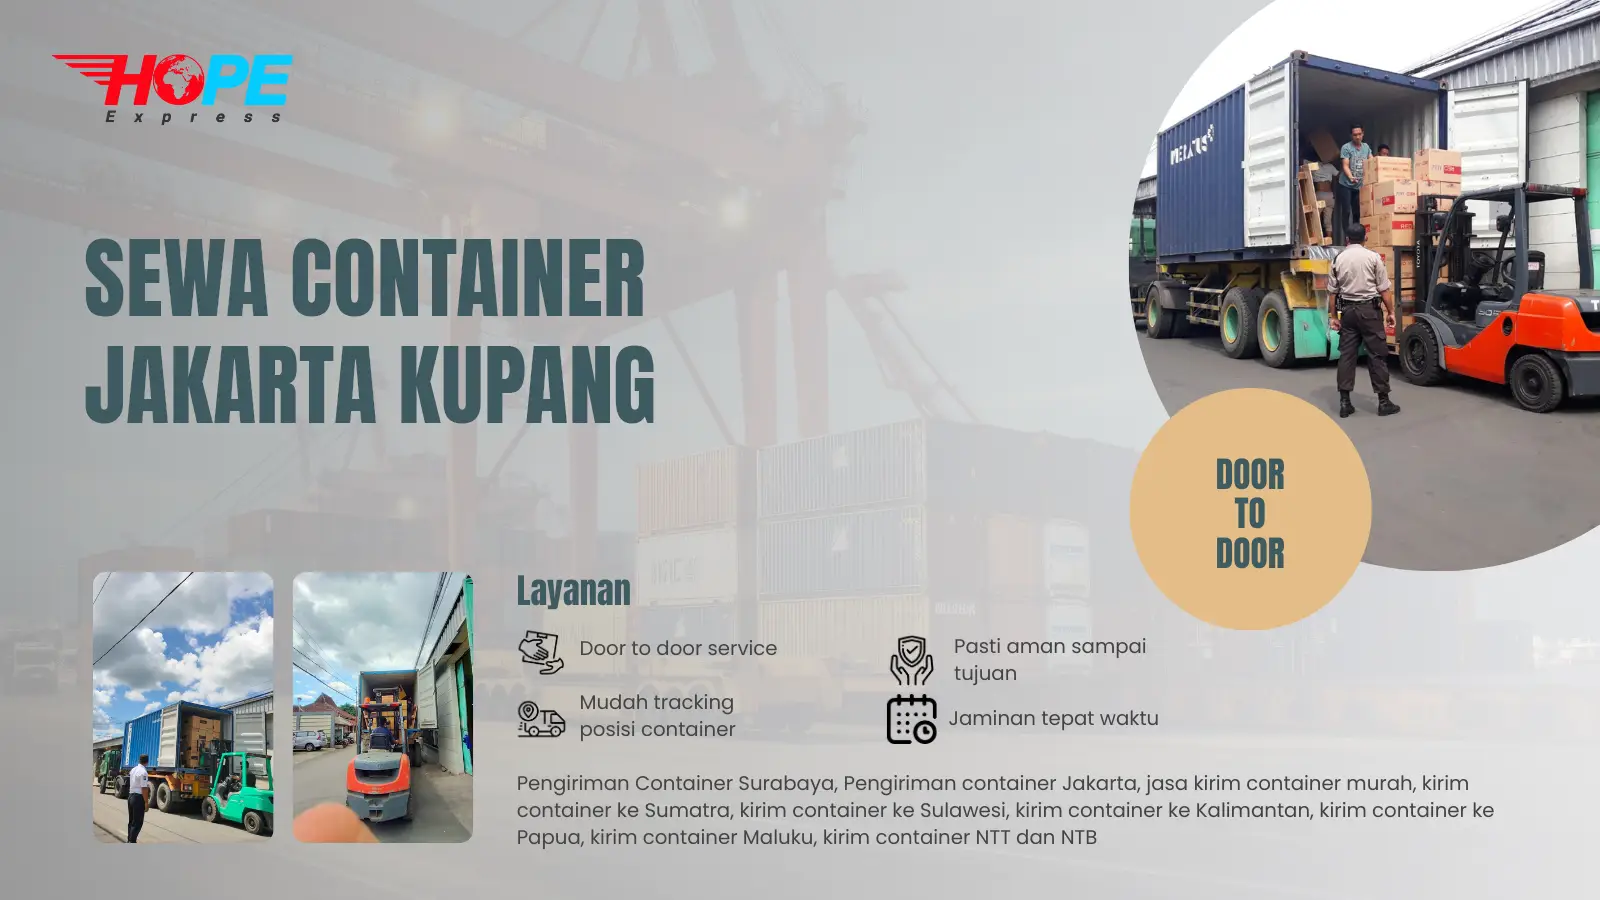 Sewa Container Jakarta Kupang